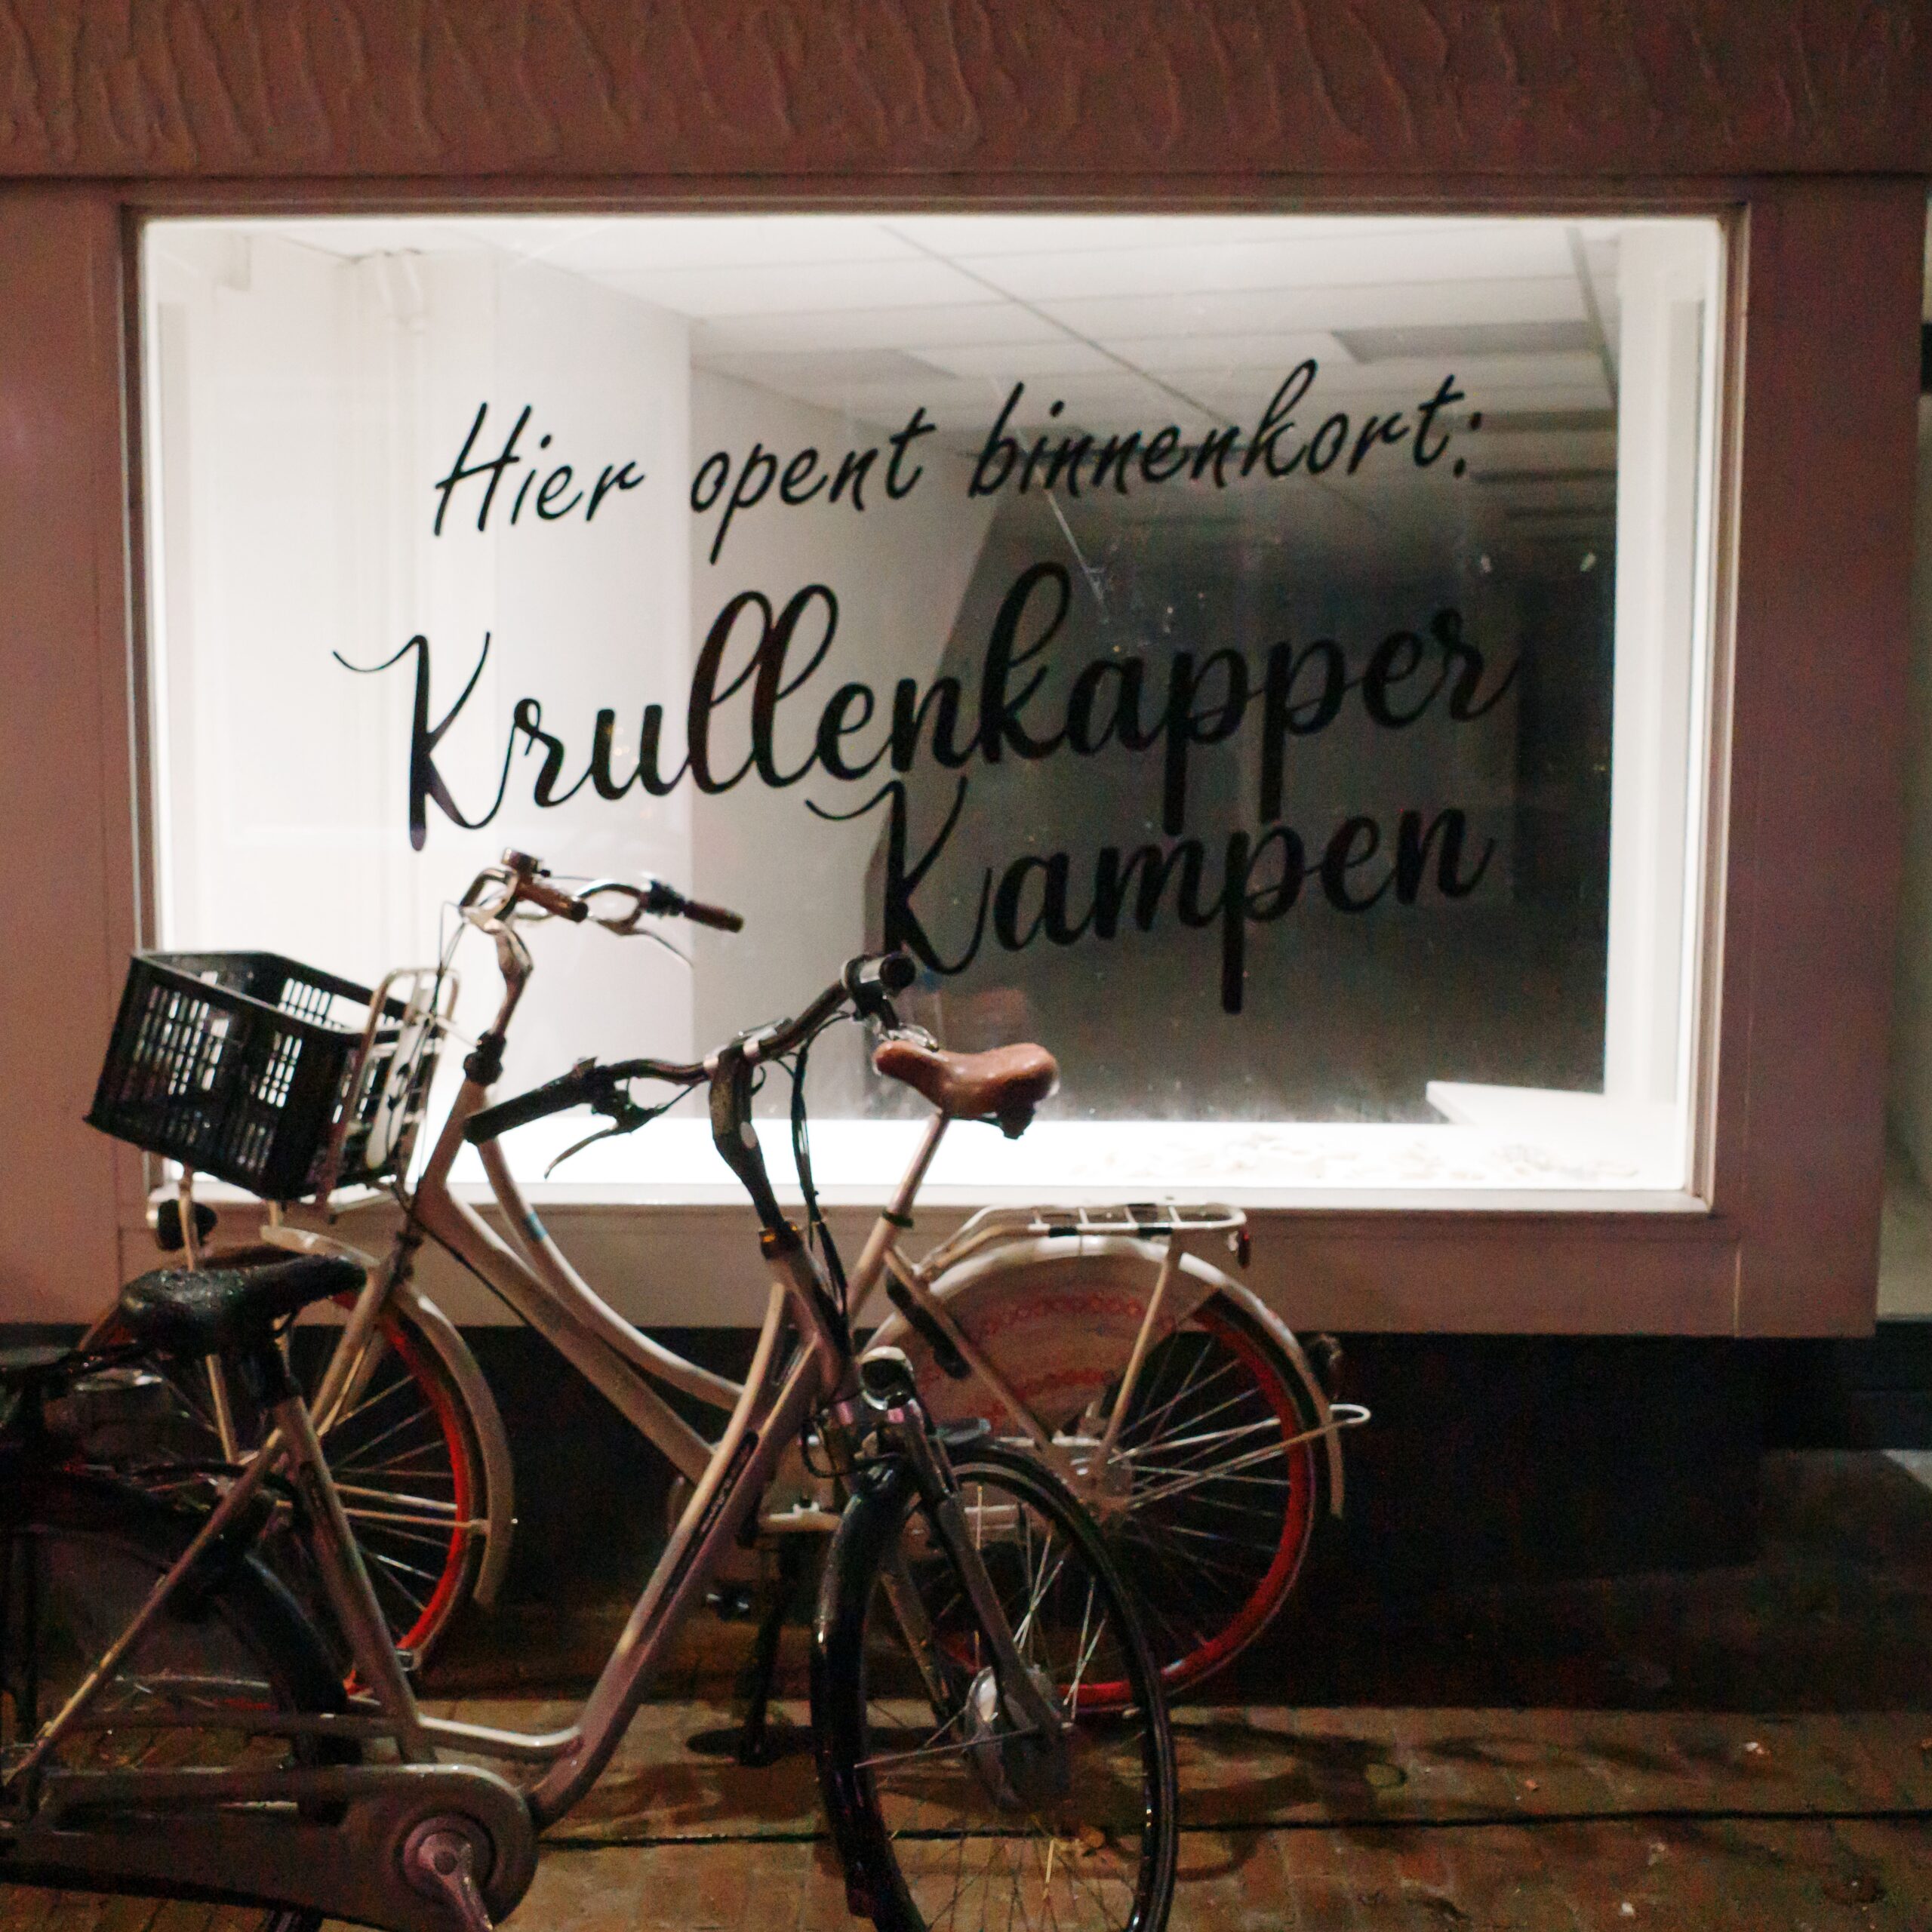 4567: Krullenkapper